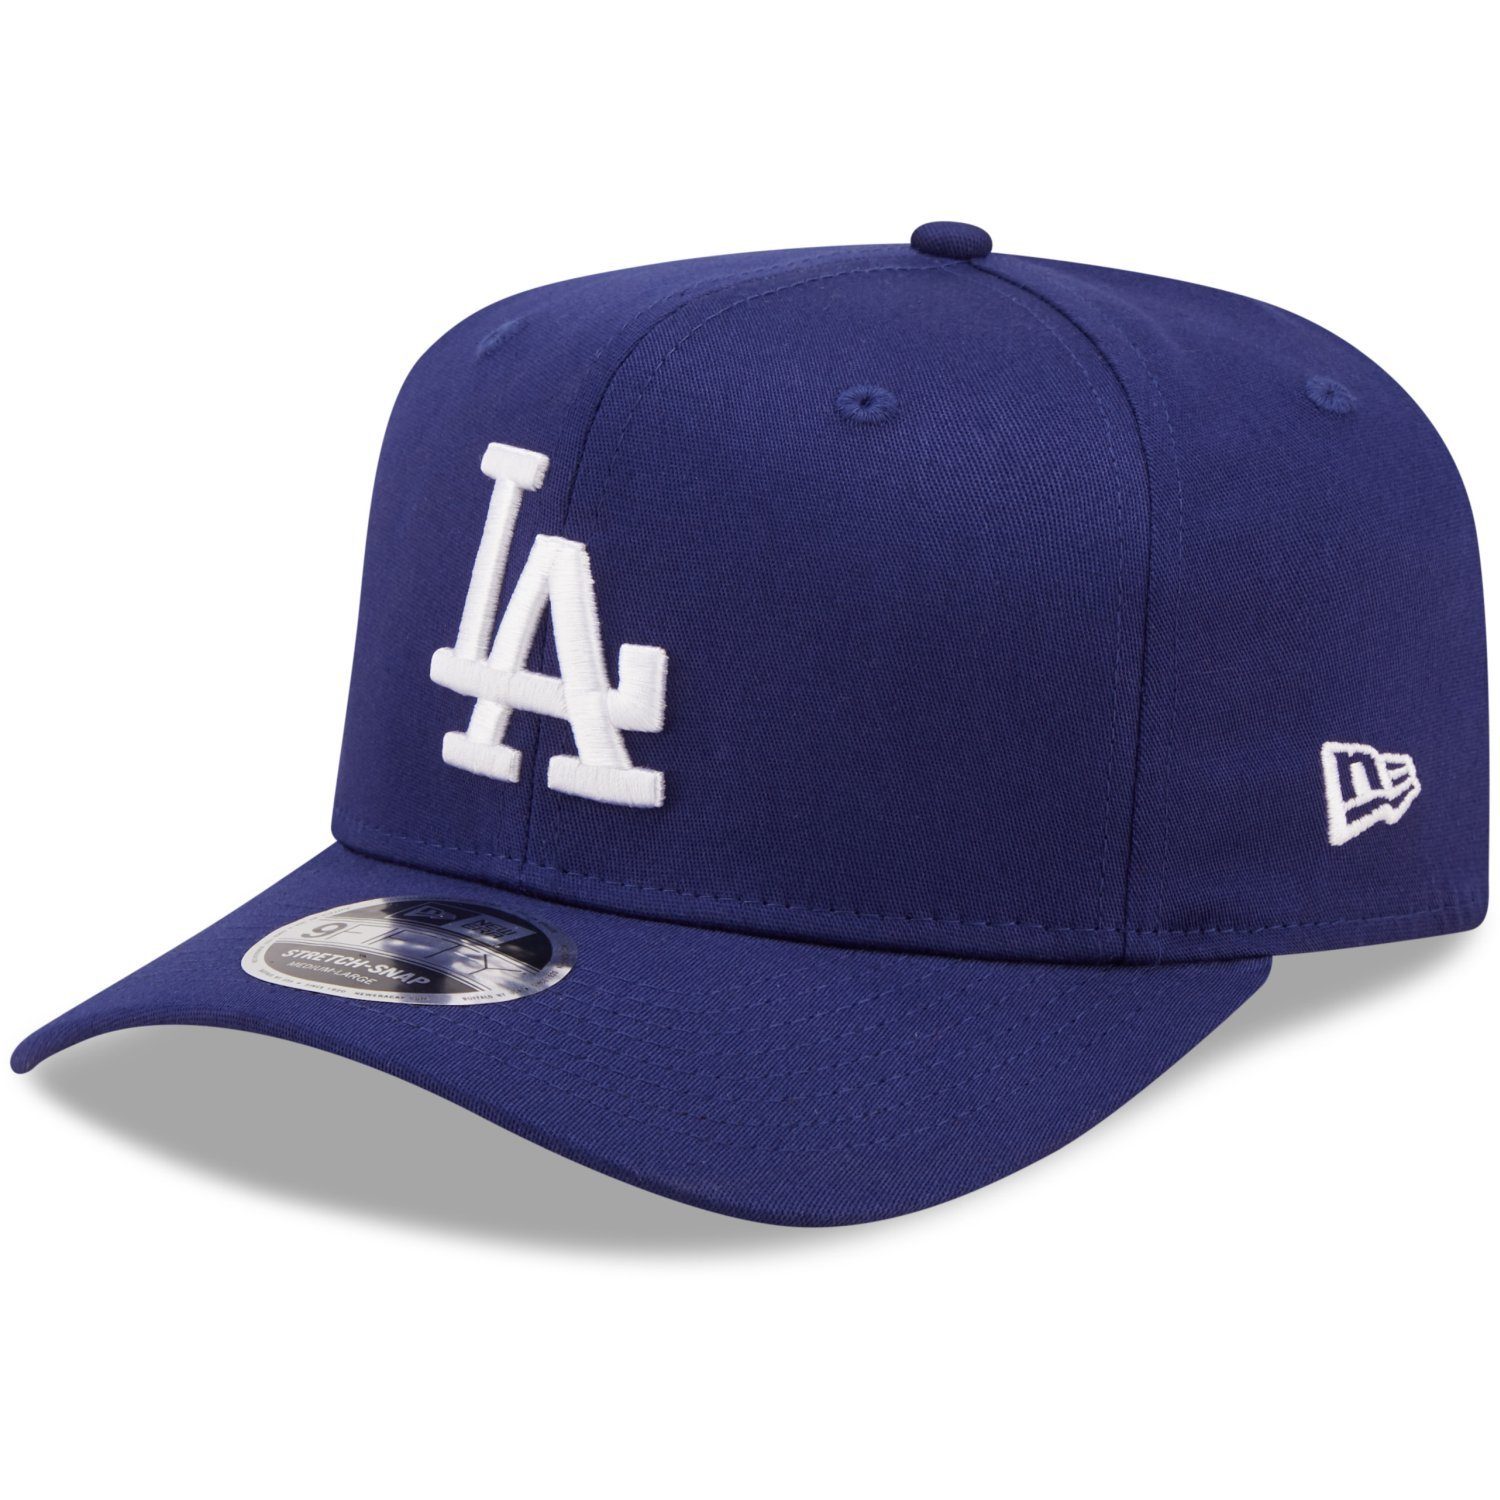 Cap Stretch 9Fifty Angeles Dodgers New Los Flex Era